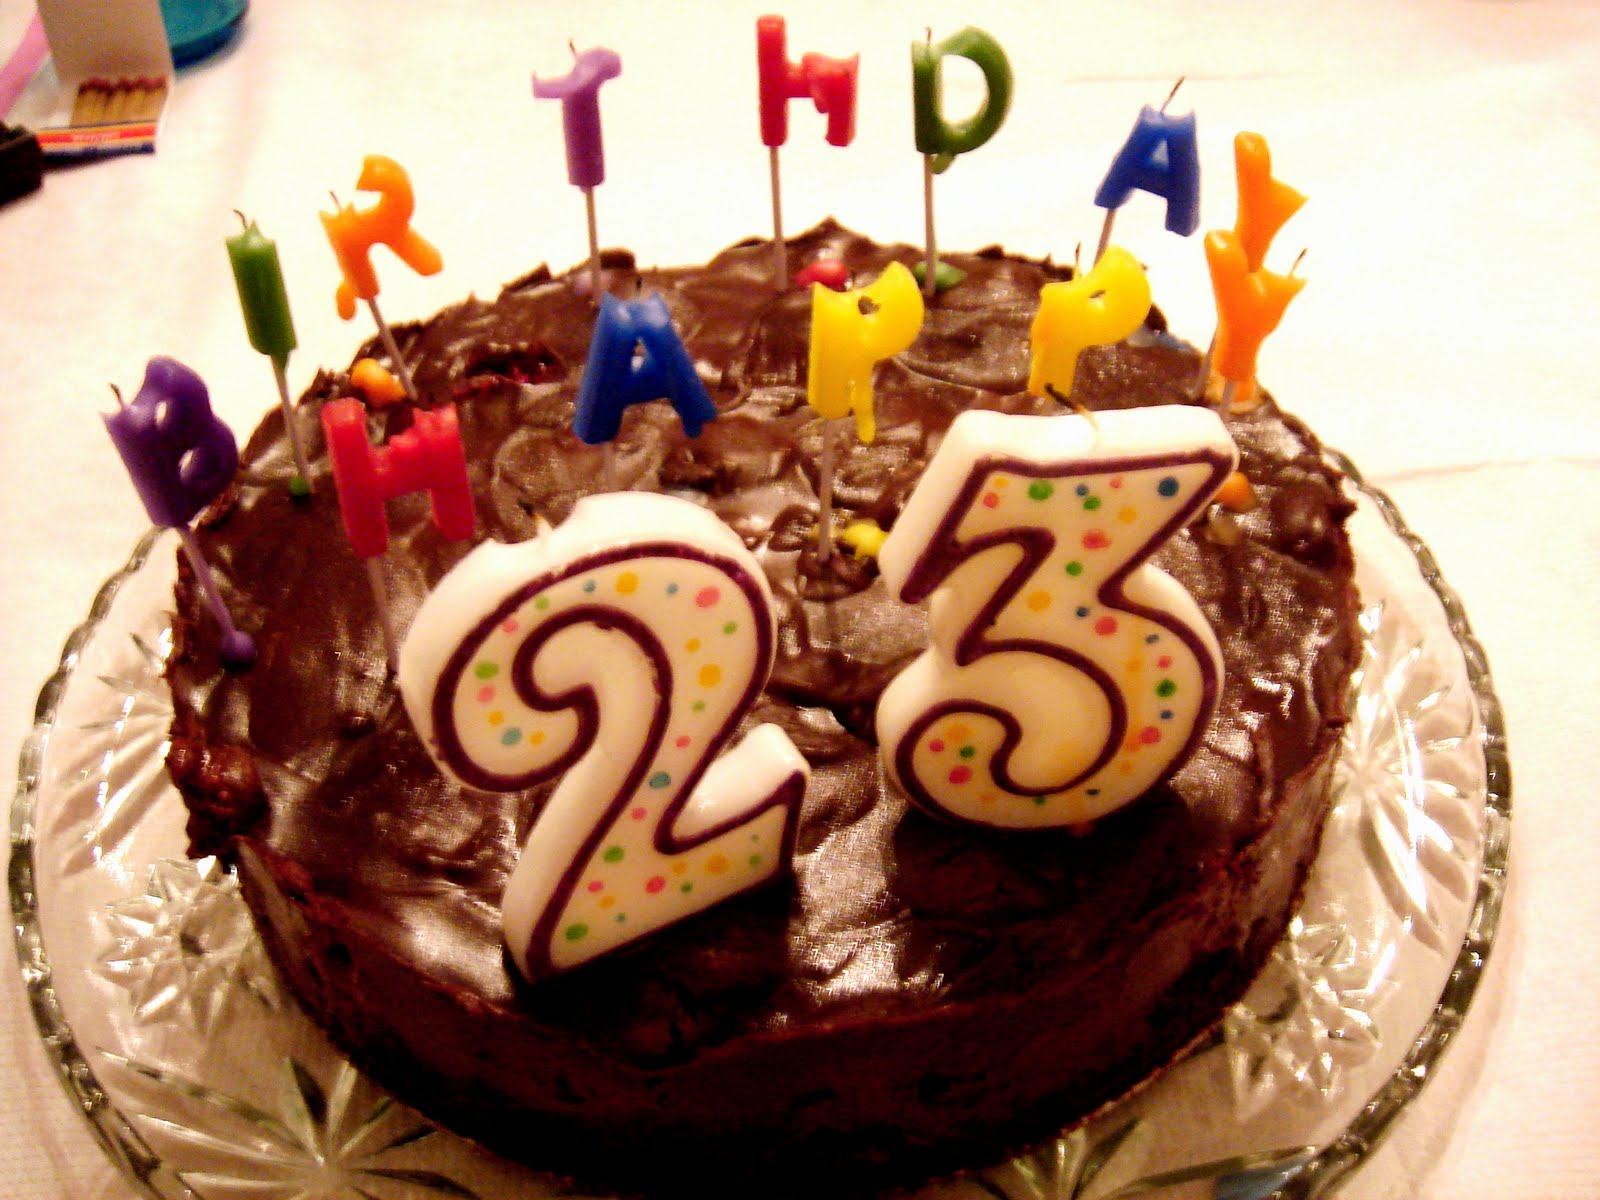 fond d'écran de gâteau d'anniversaire avec nom,gâteau,aliments,gâteau d'anniversaire,dessert,tourte